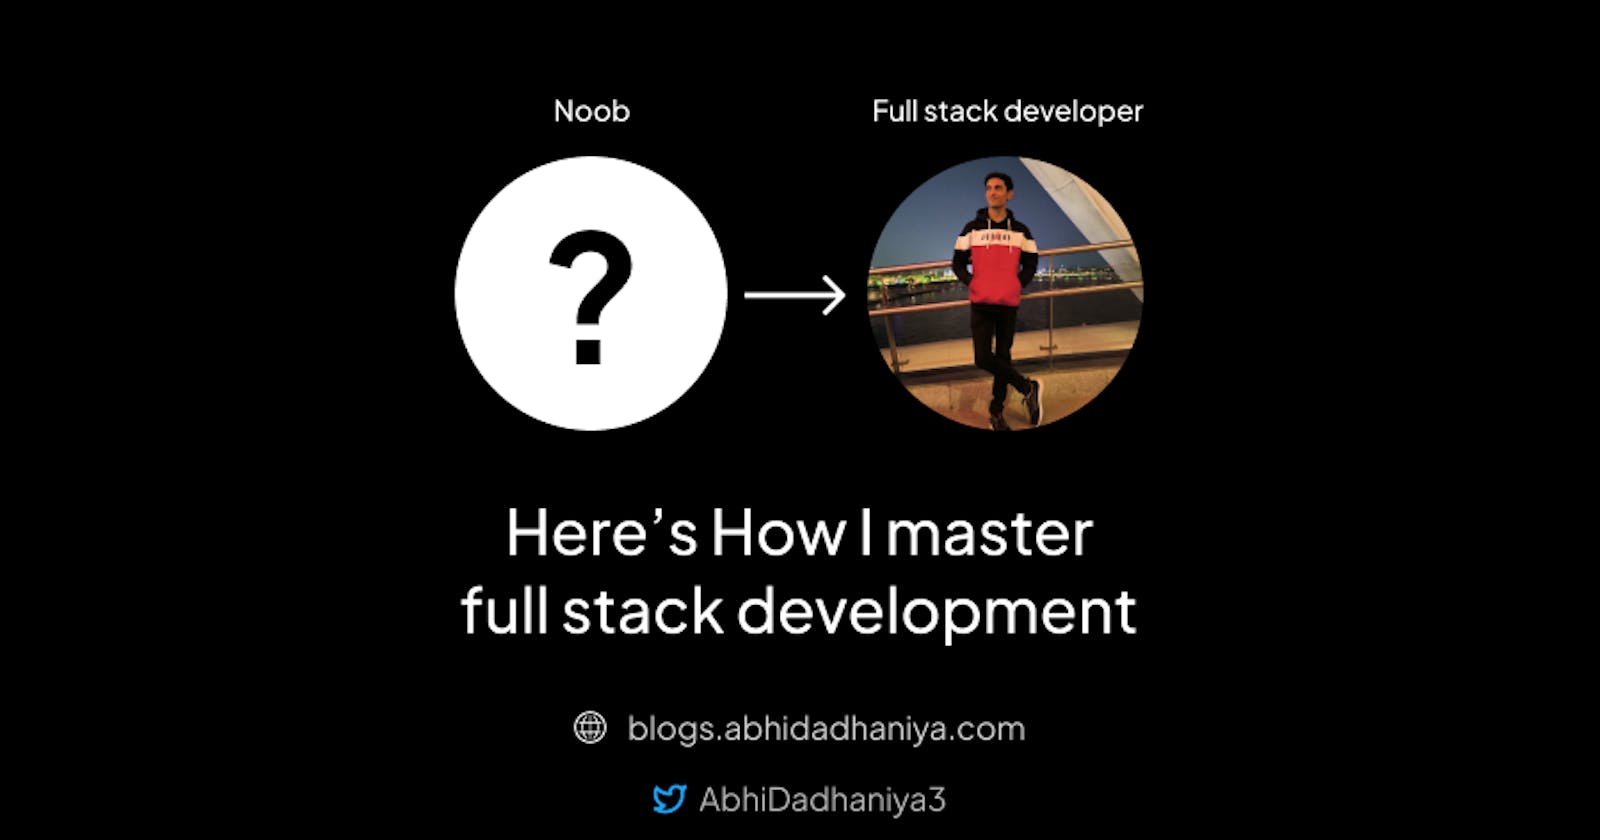 Here's How I master full stack development